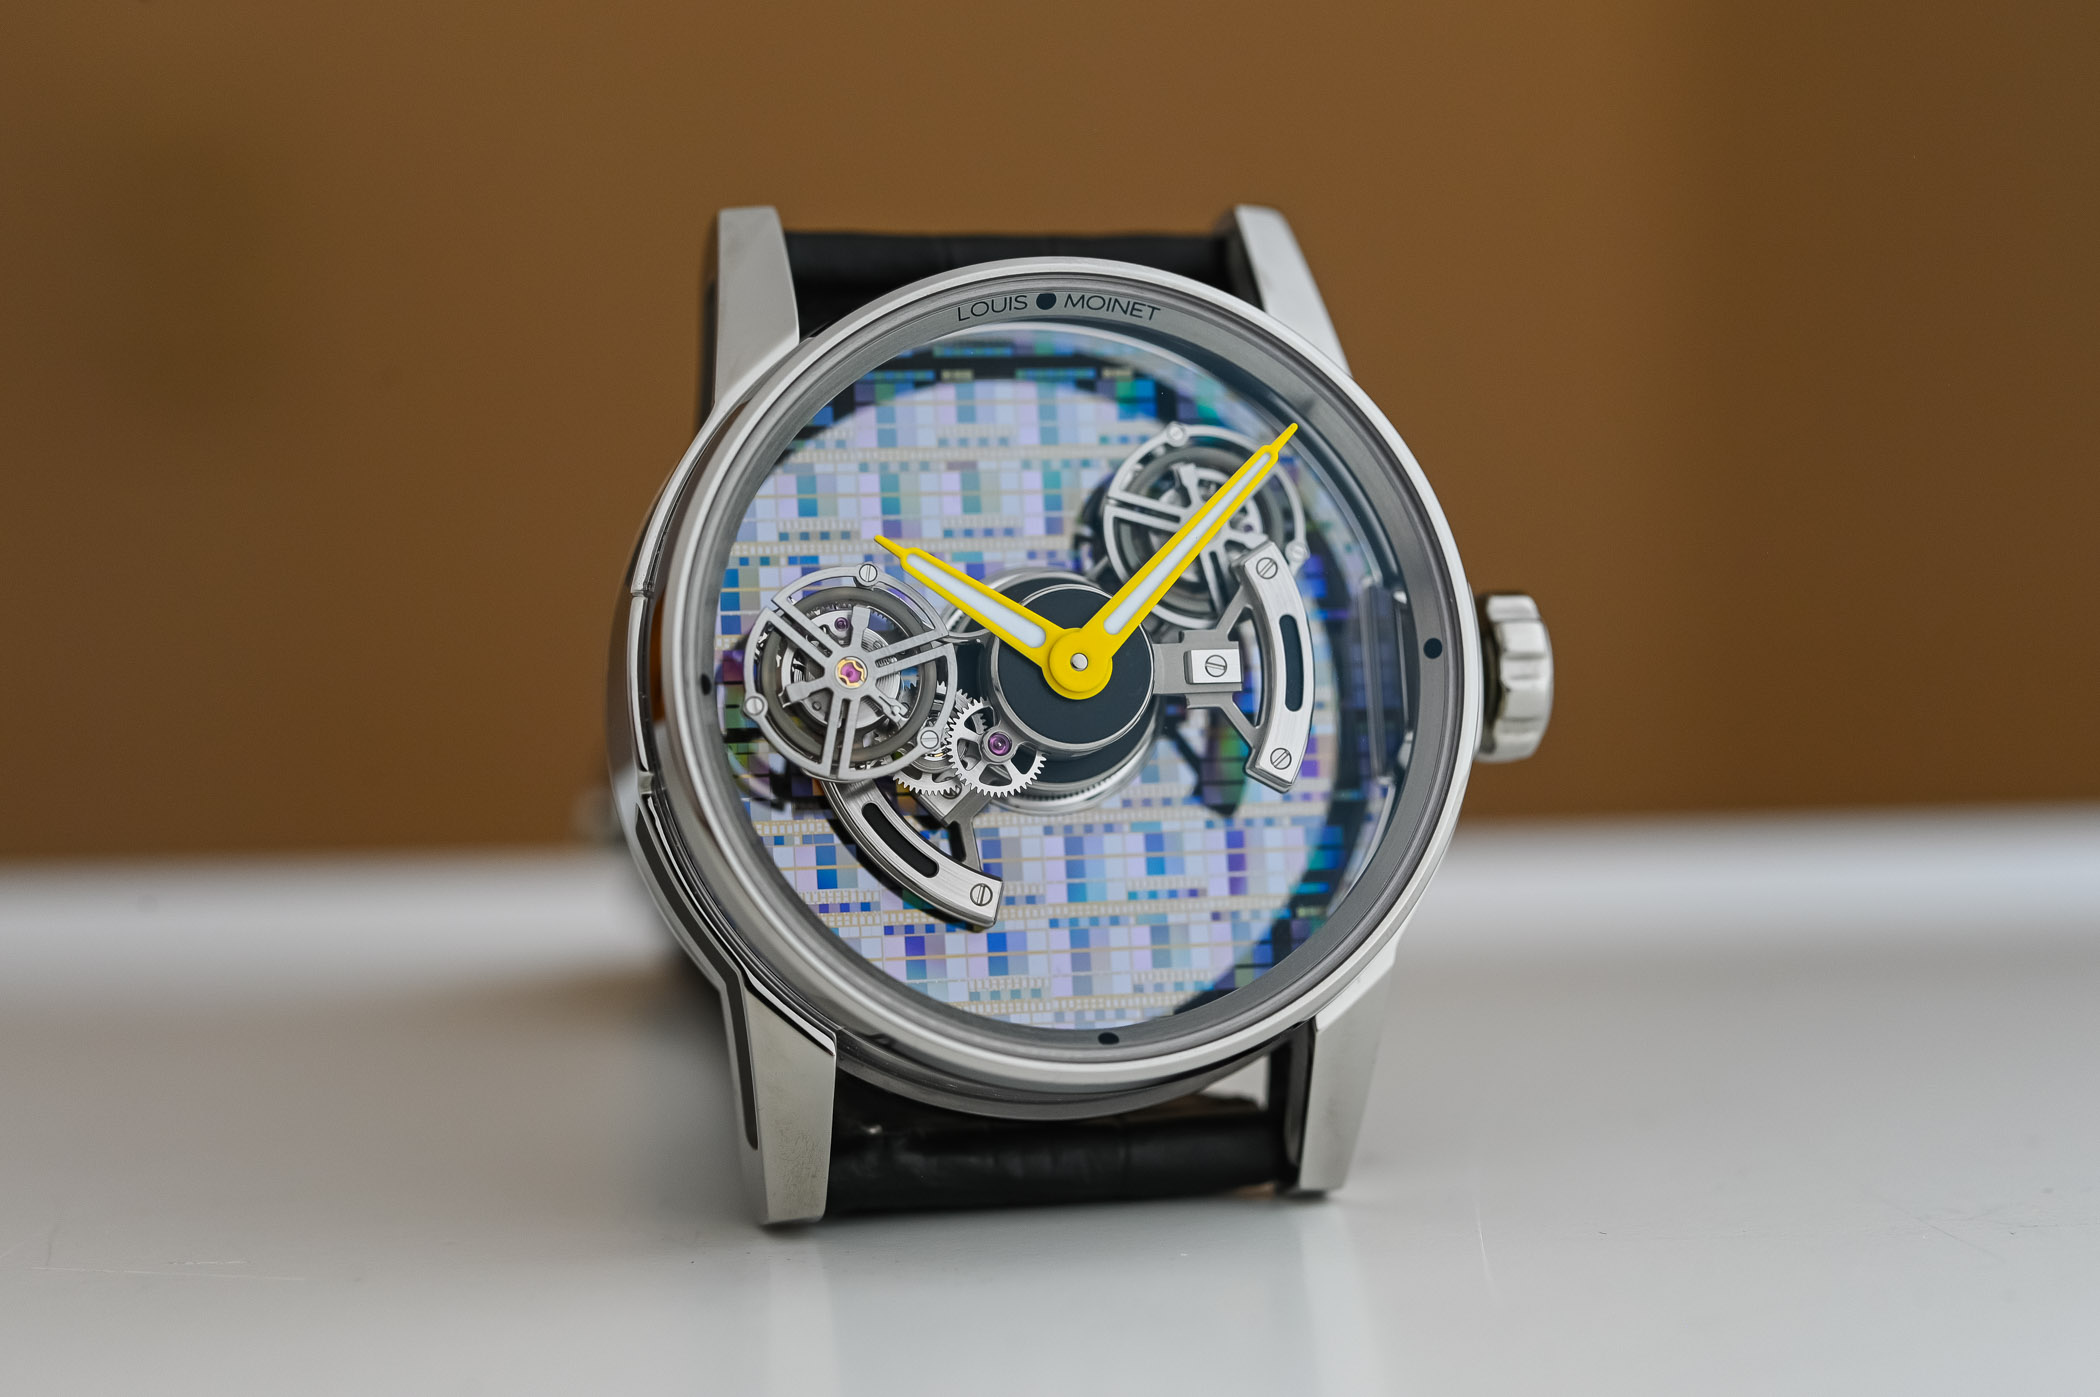 Часы Louis Moinet Astronef Techno и их научно-фантастический циферблат из кремниевых пластин